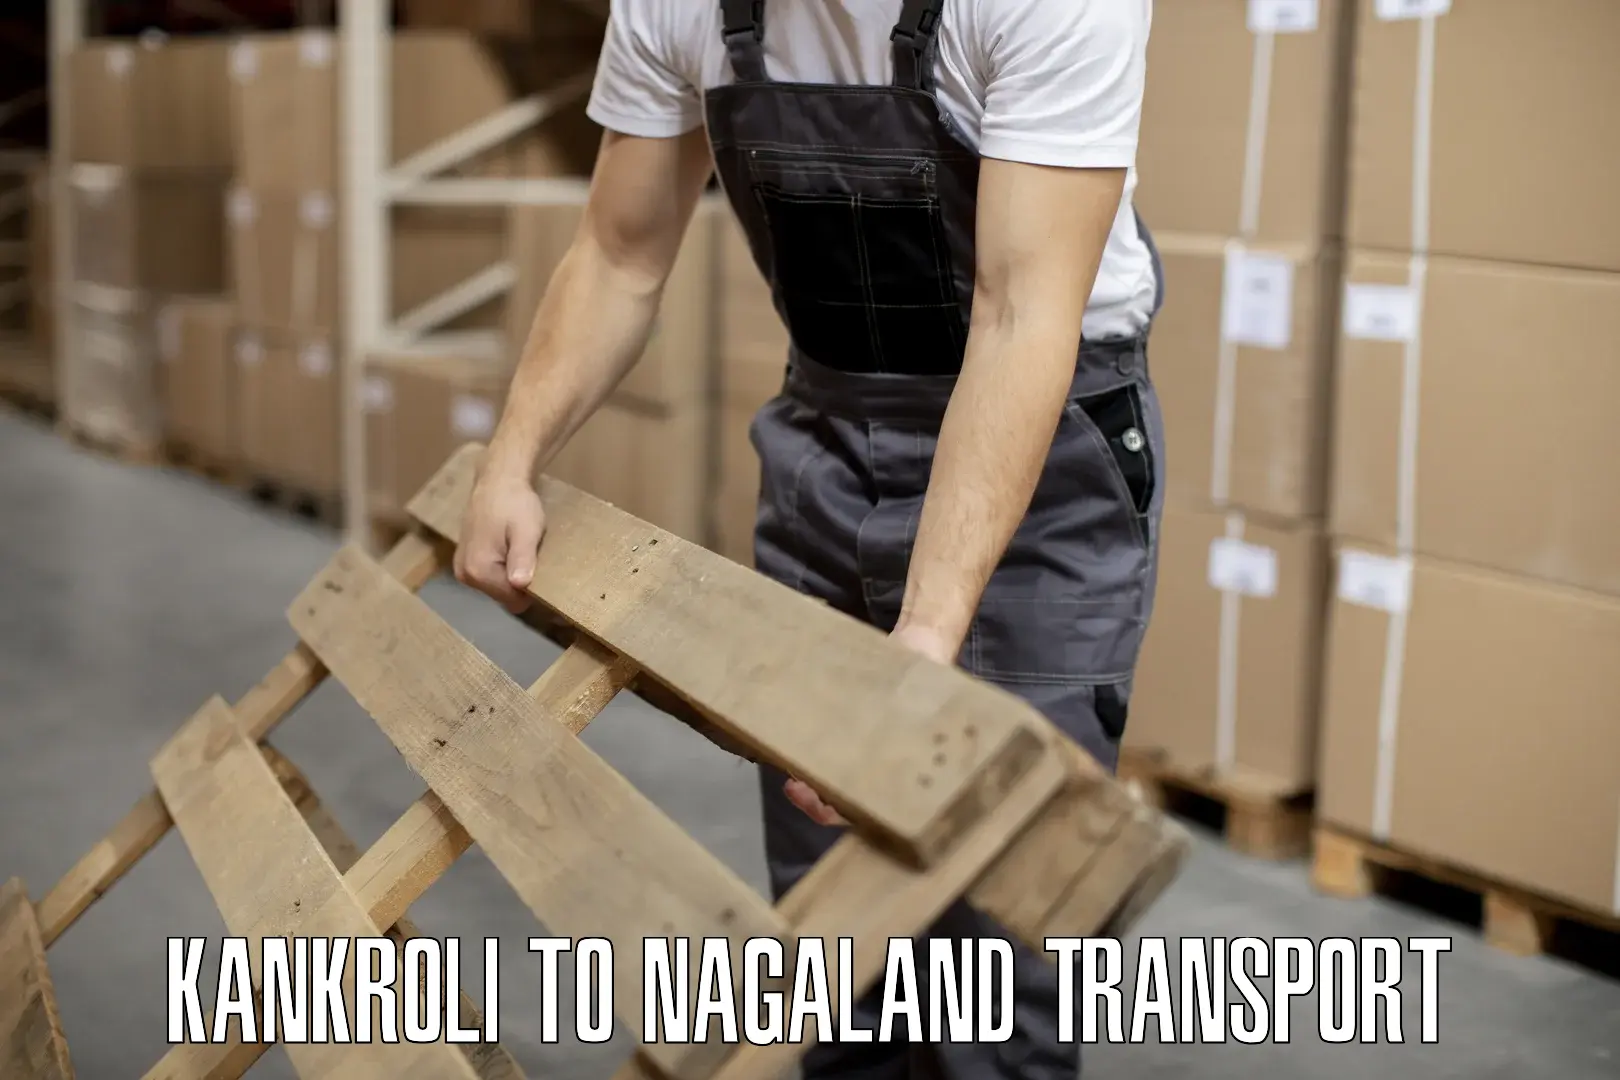 Vehicle transport services Kankroli to Nagaland